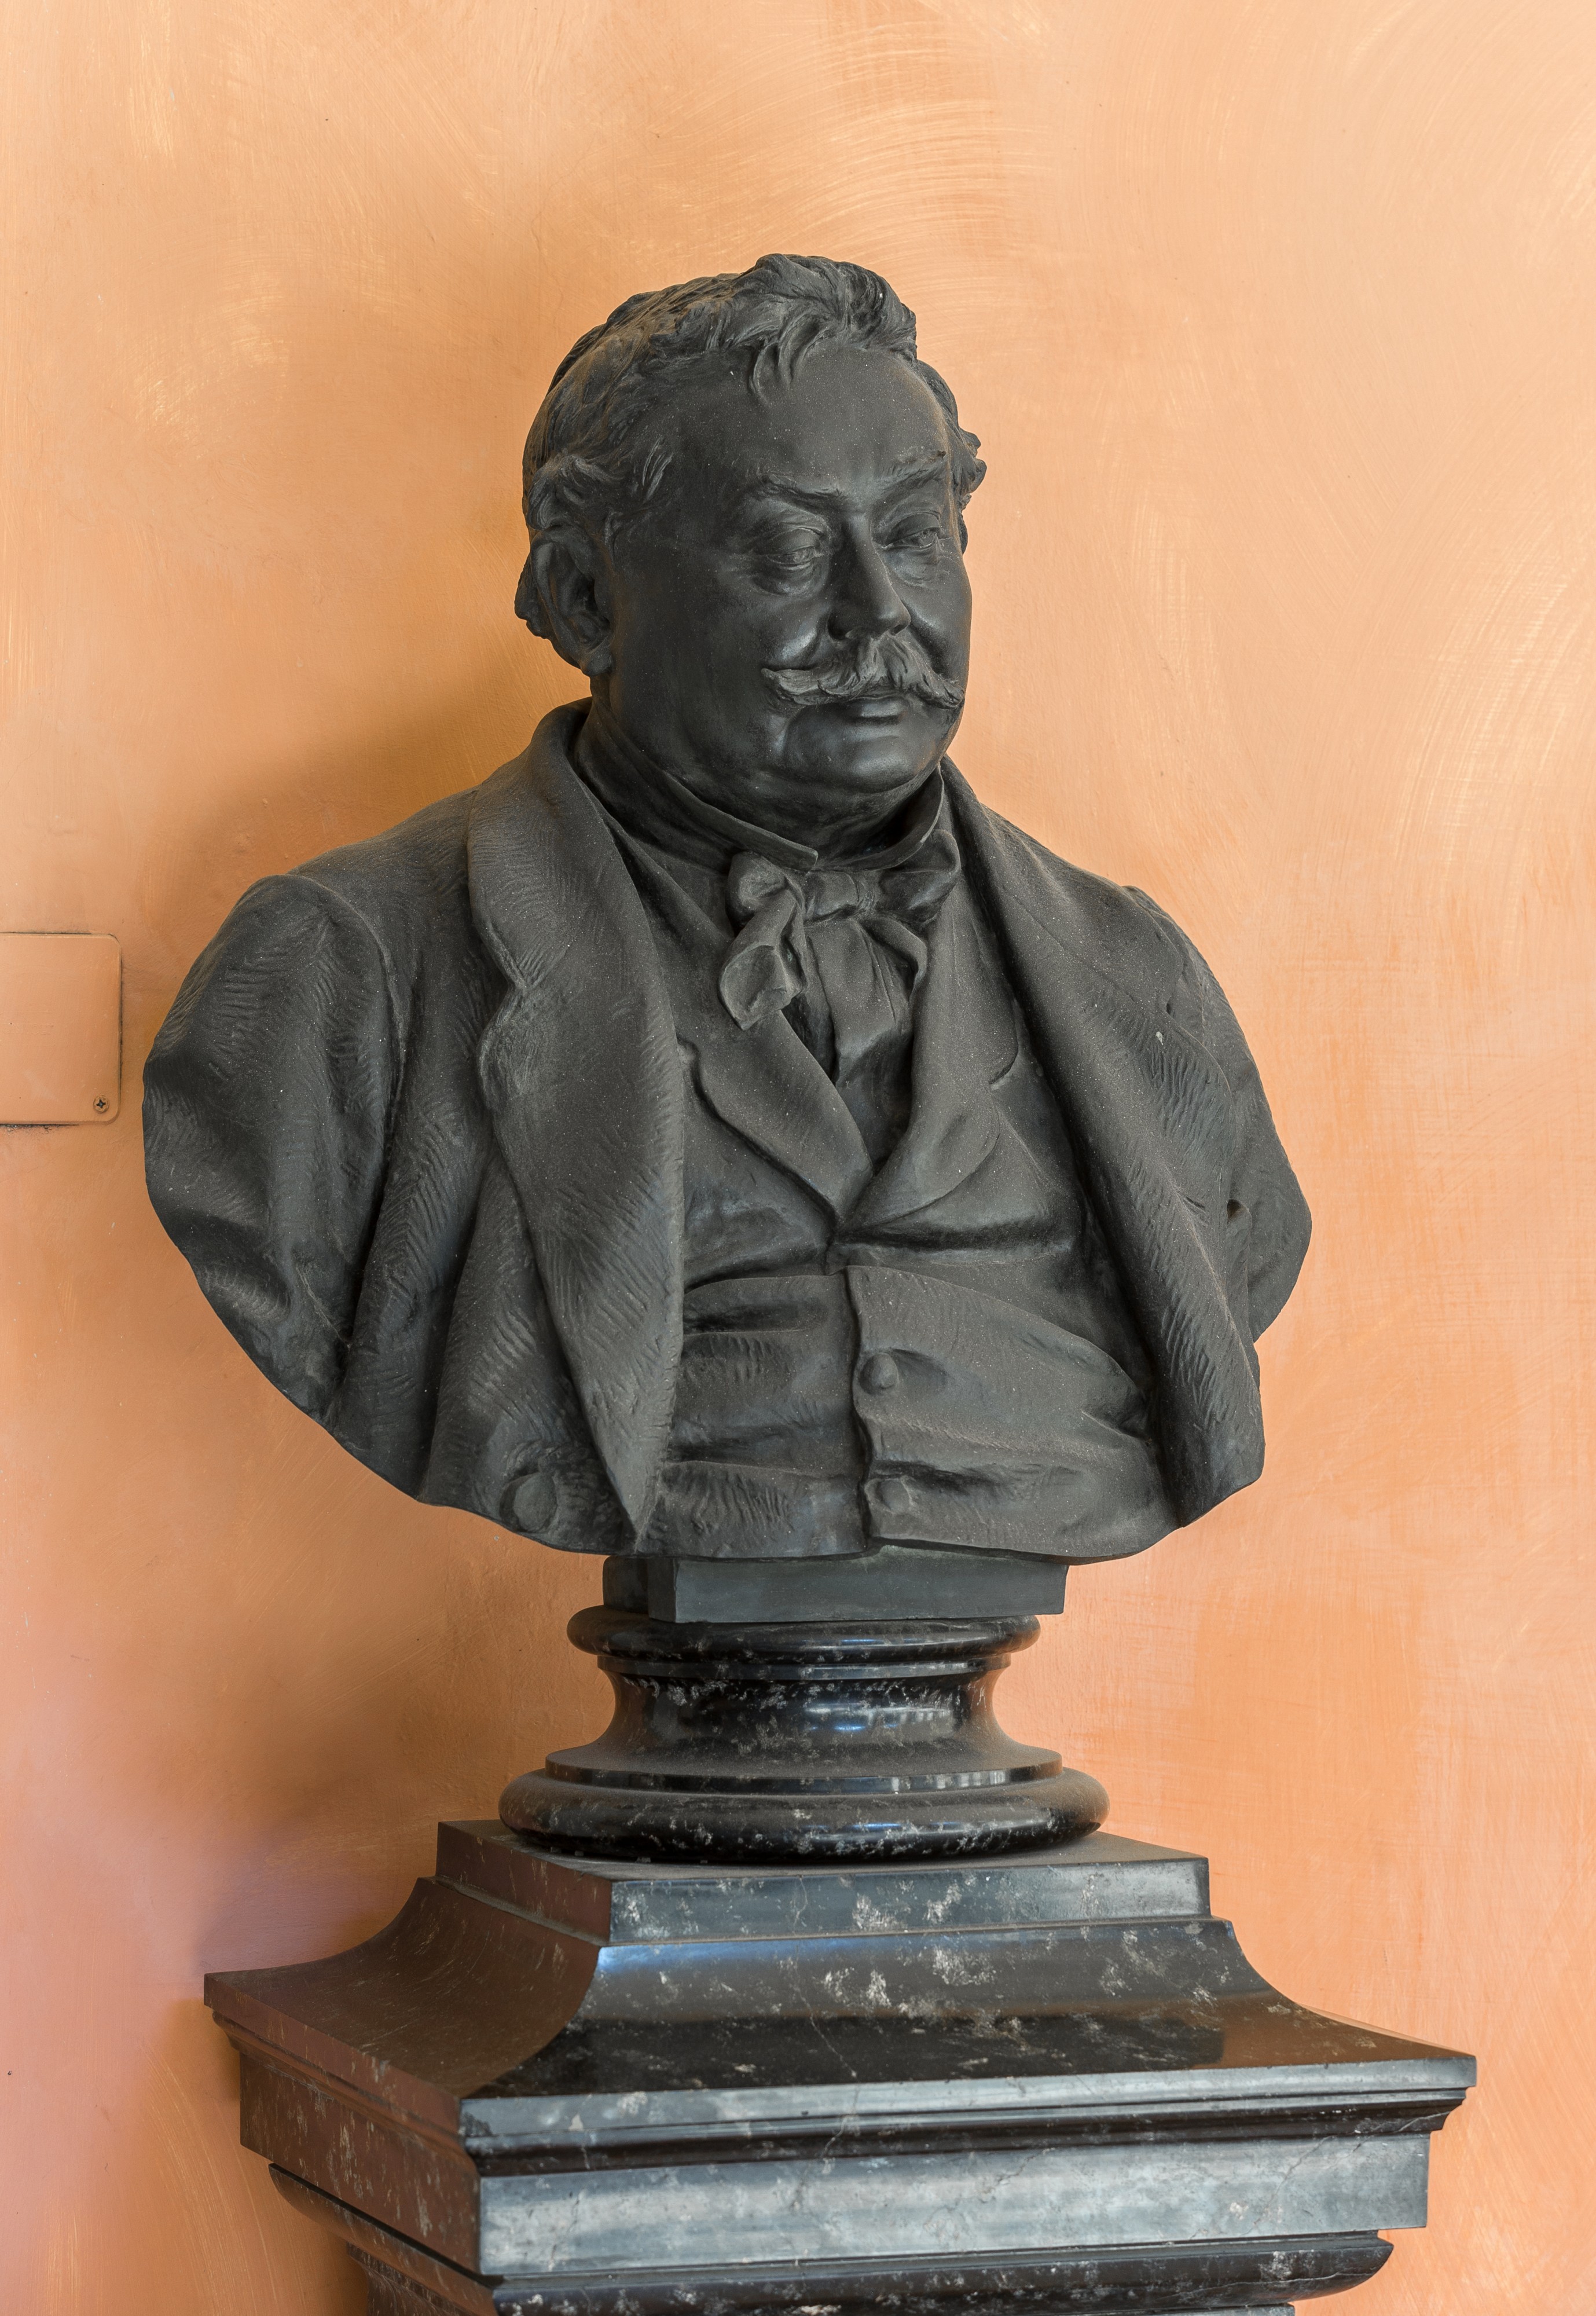 Ferdinand von Hebra (1816-1880), Nr. 106, bust (bronze) in the Arkadenhof of the University of Vienna-2880